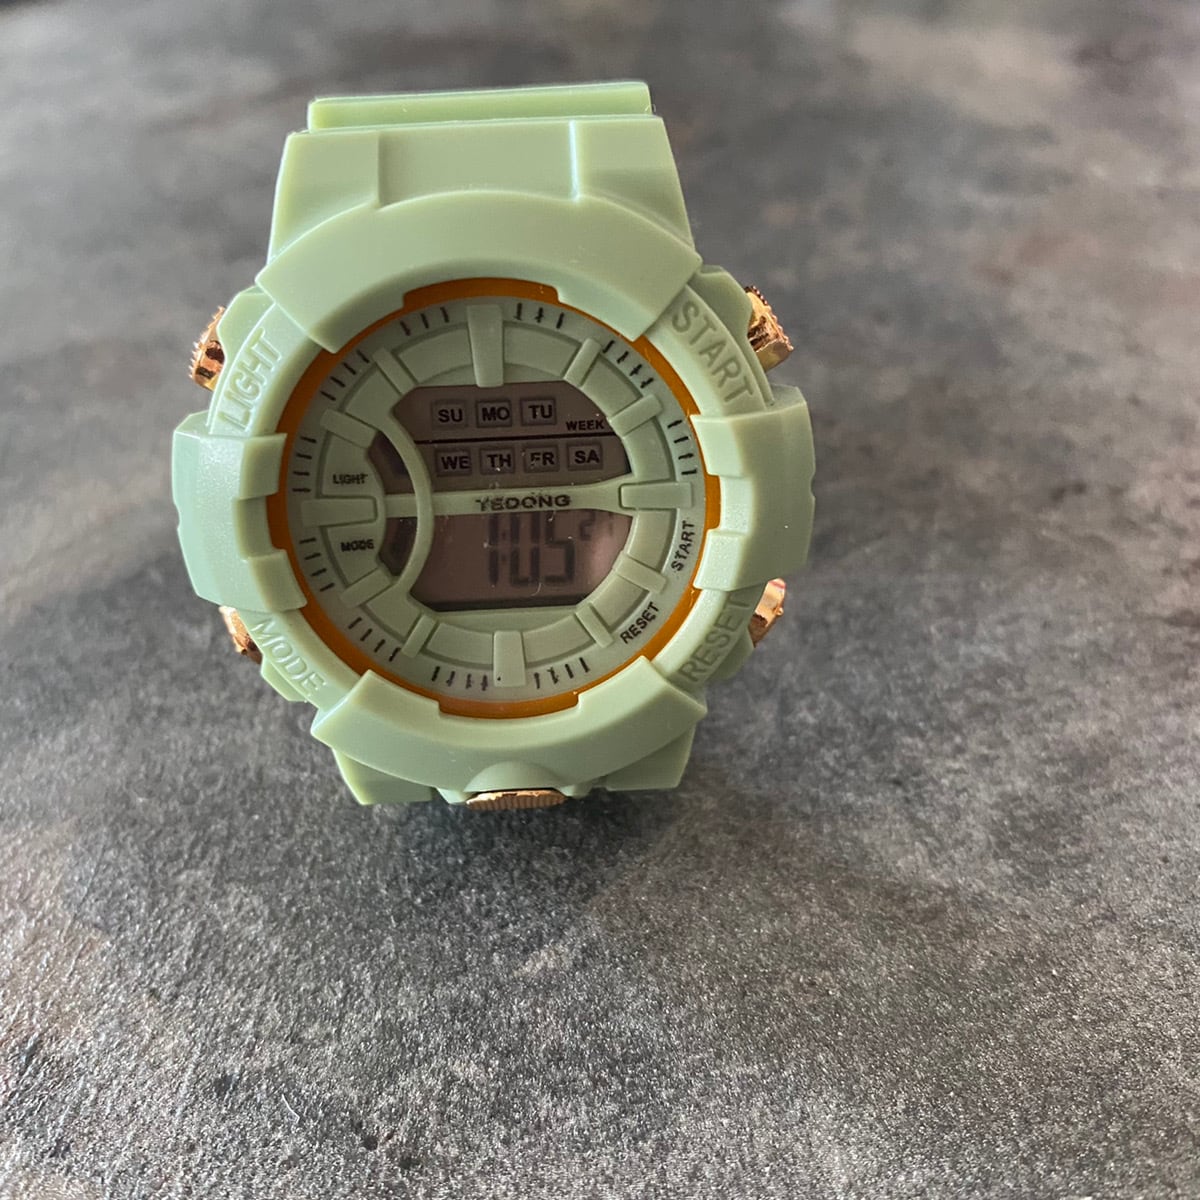 新品 腕時計 レディース 緑 人気 ピンクゴールド×ピンク 高級 韓国